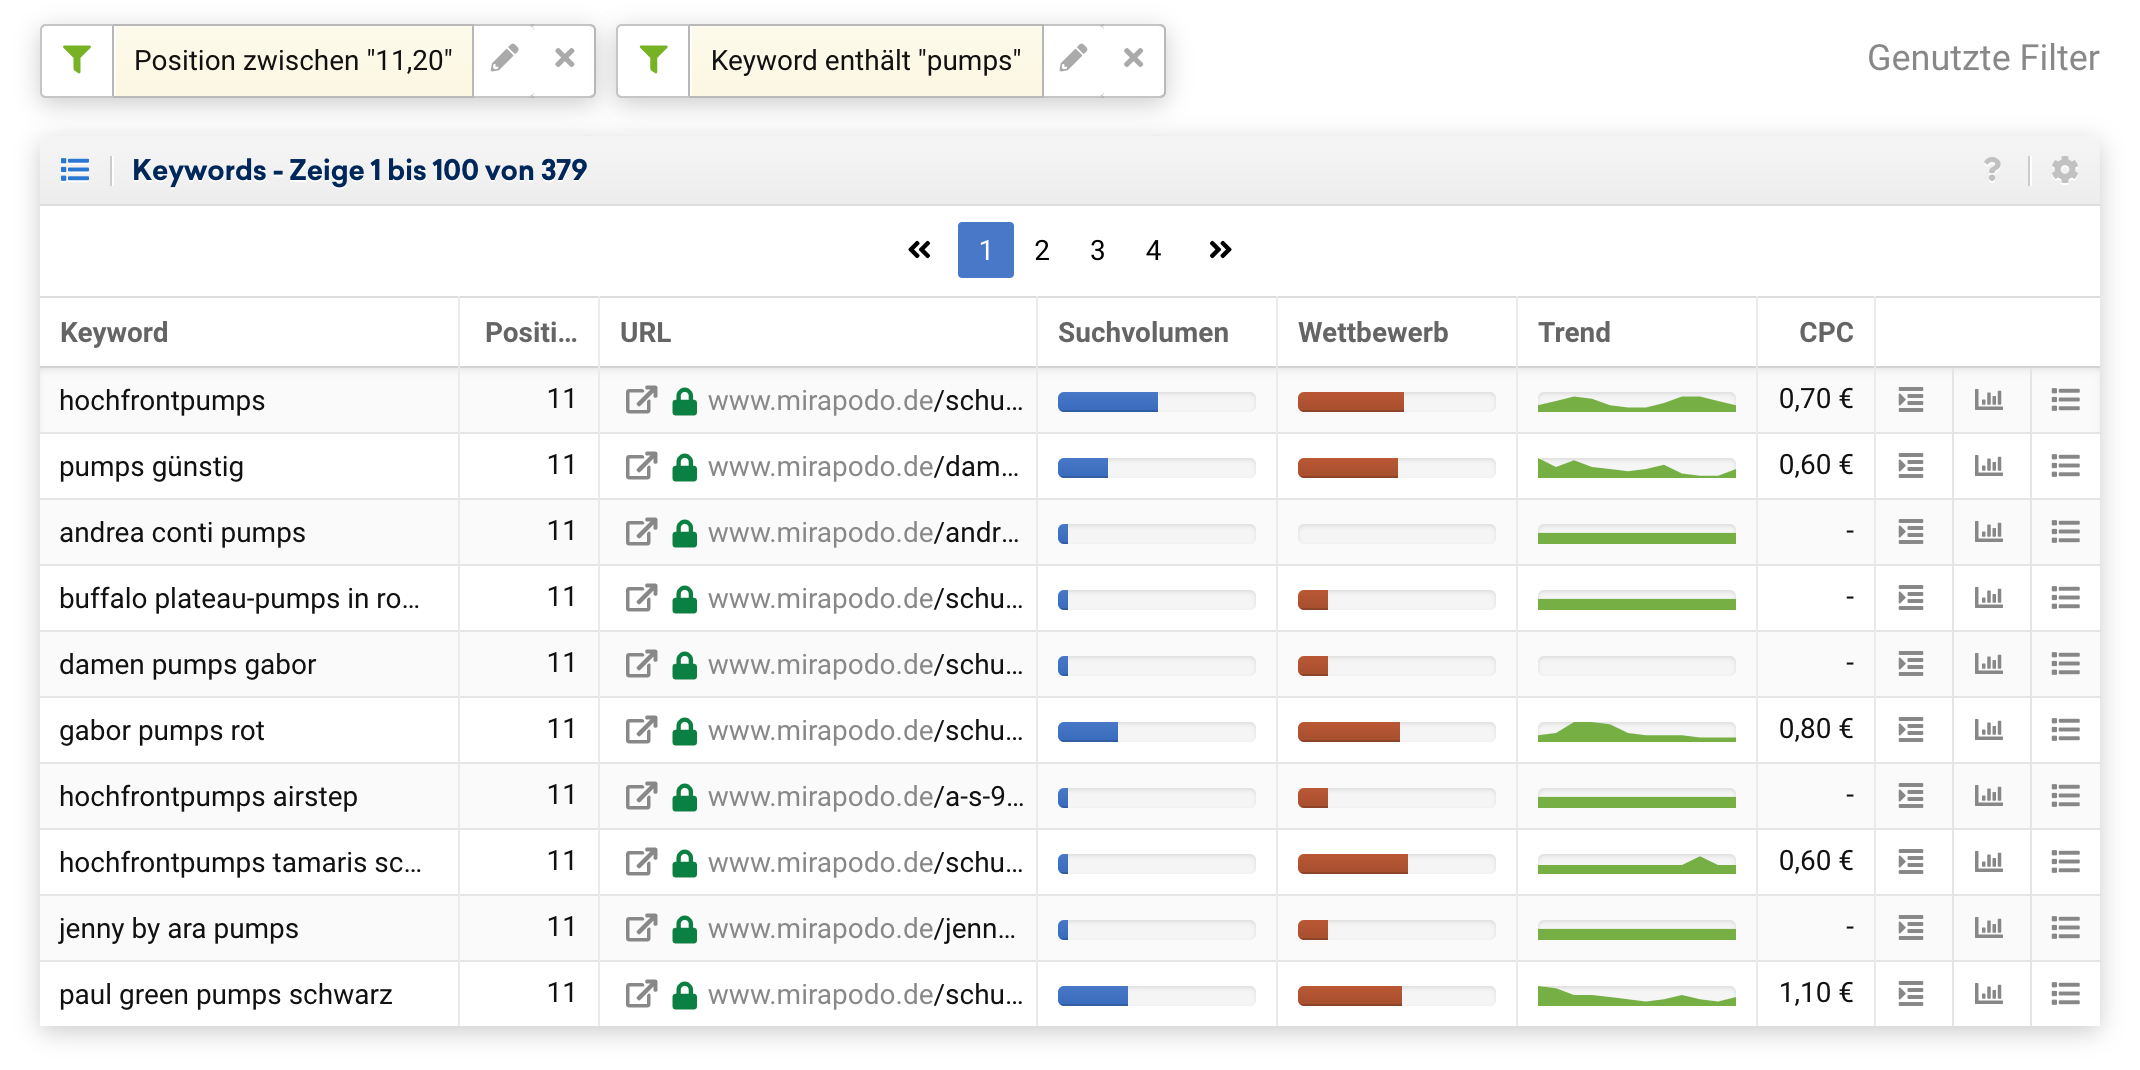 Keyword-Ergebnisliste für mirapodo.de, gefiltert nach Position 11 bis 20 und allen Keywords die den Bestandteil "pumps" beinhalten.